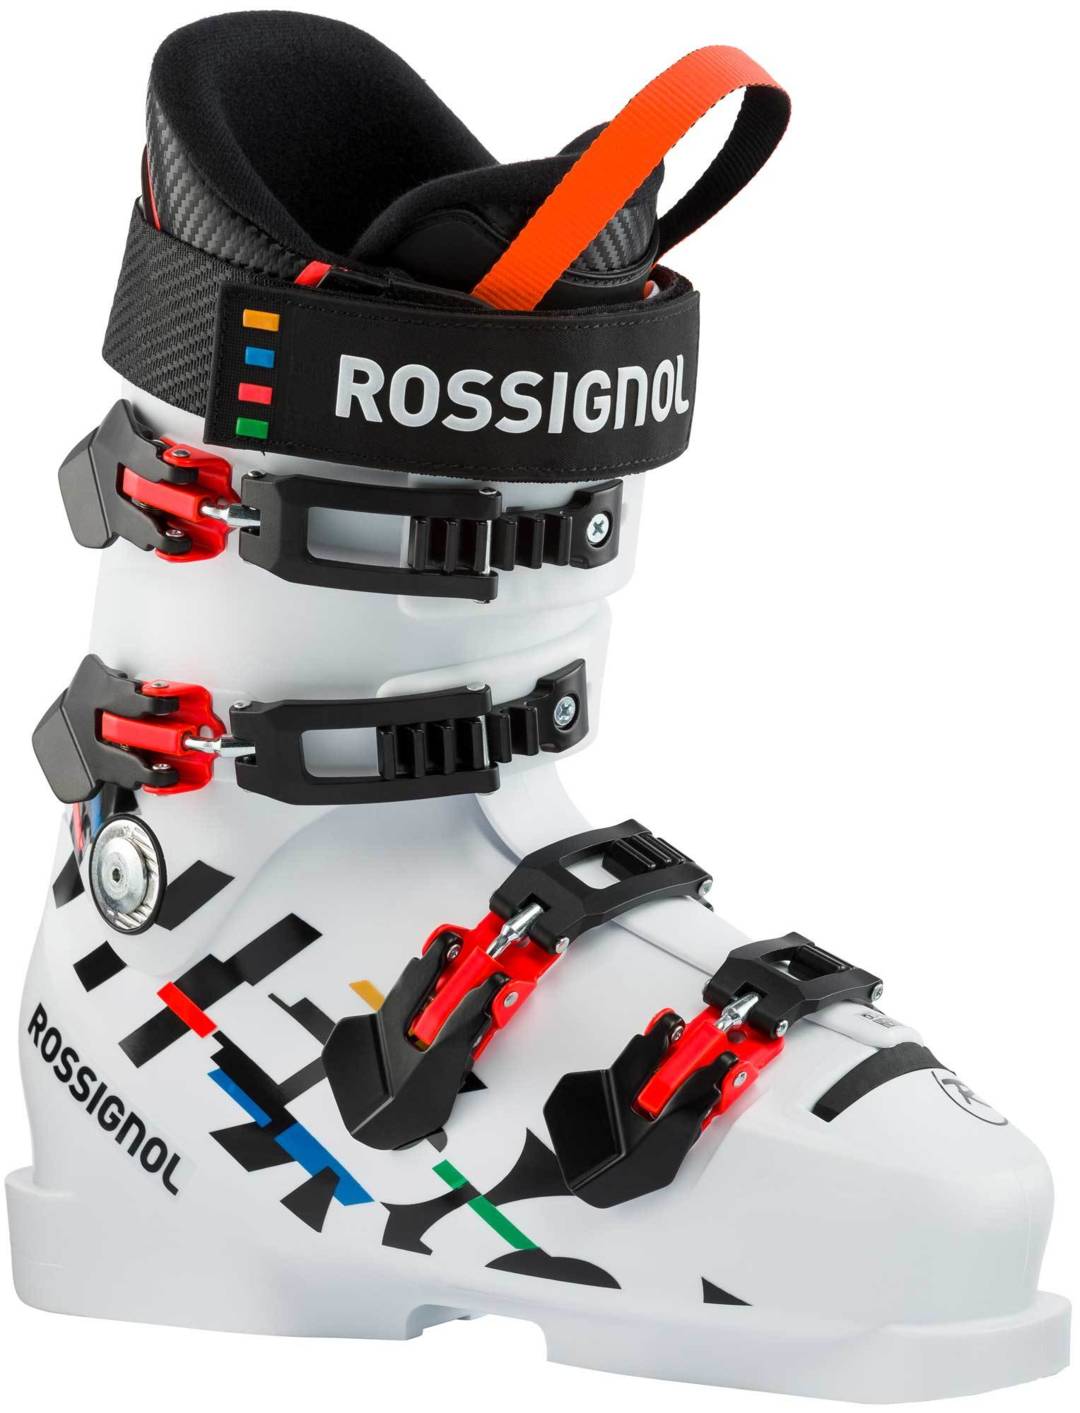 Rossignol HERO WORLD CUP 90 SC (2020/21) - Skischuhe für Junioren